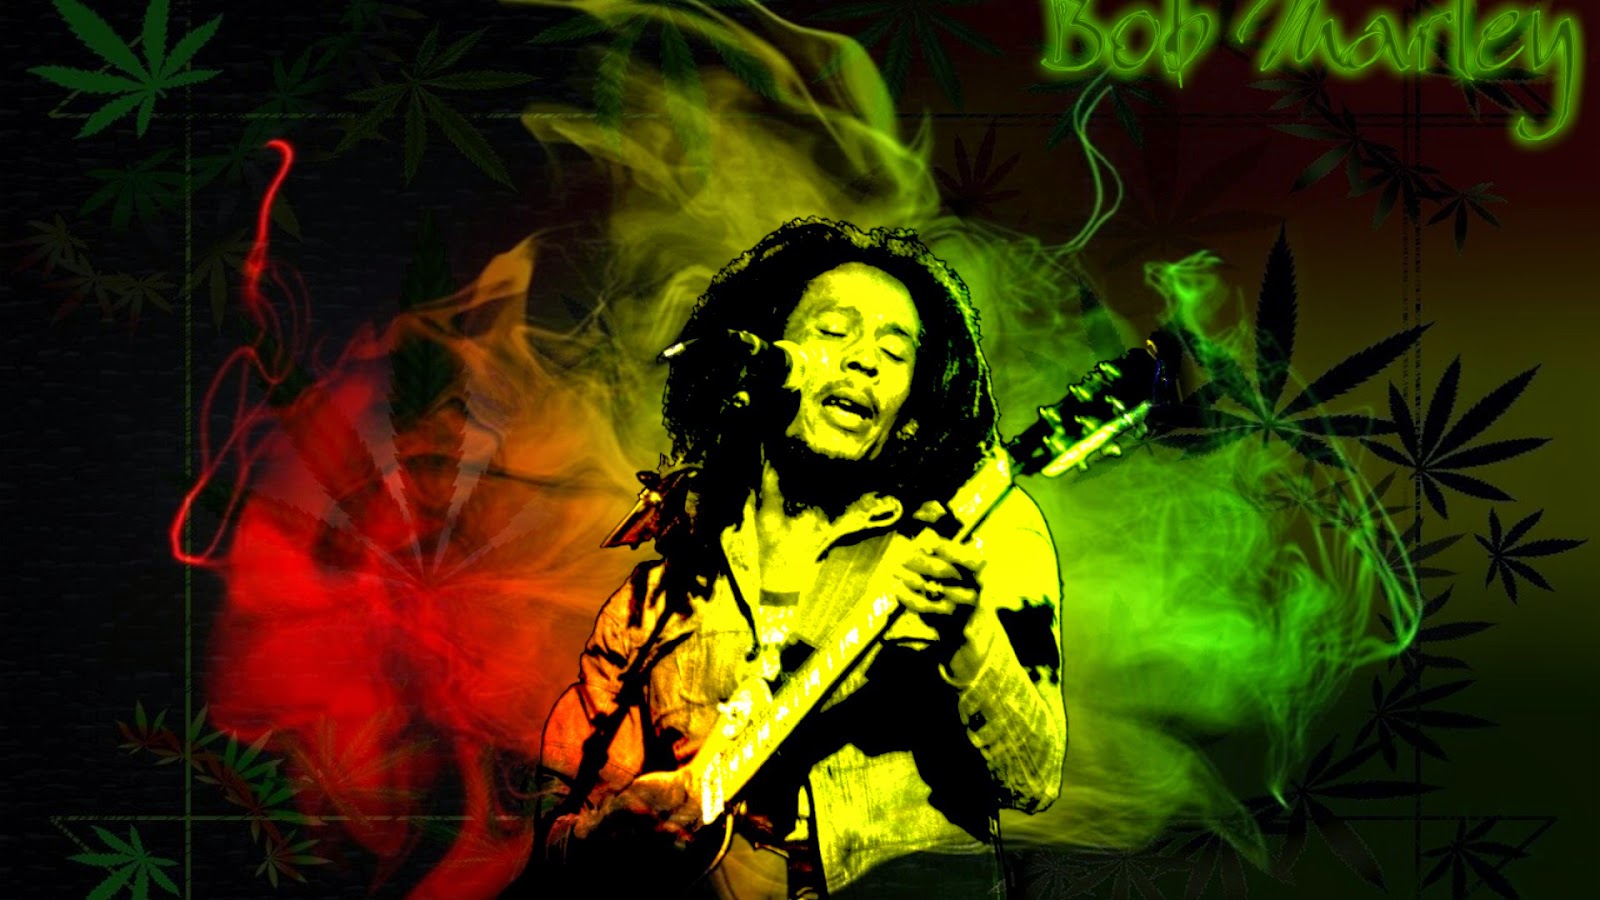 Bob Marley and Lion Wallpaper - WallpaperSafari